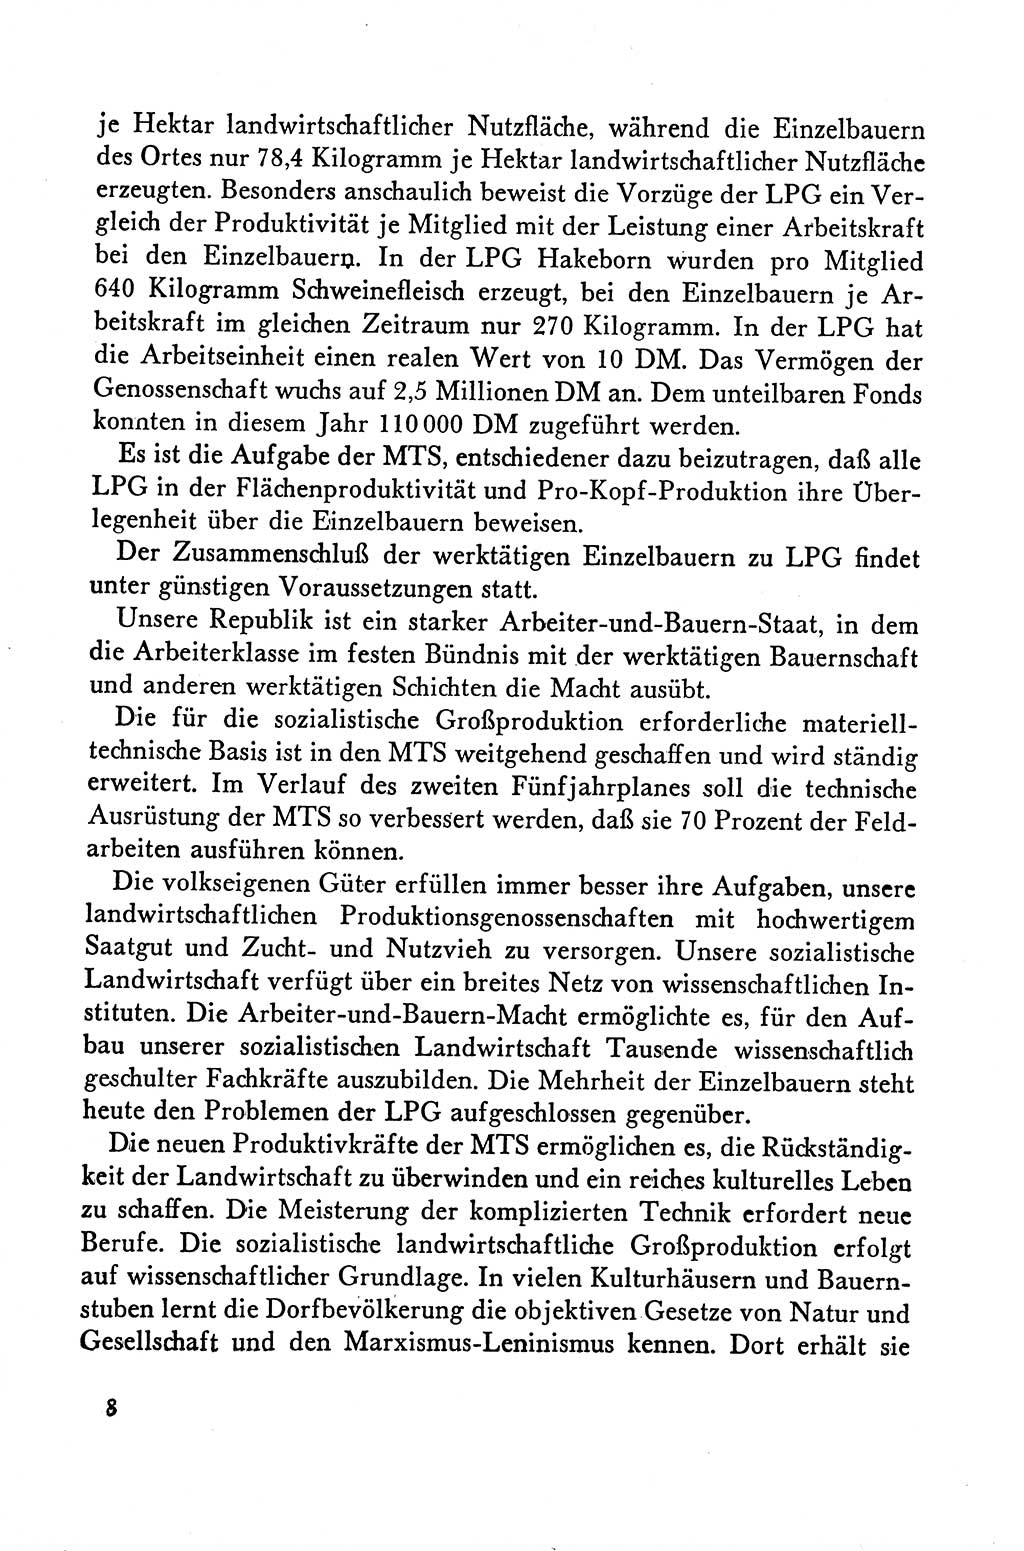 Dokumente der Sozialistischen Einheitspartei Deutschlands (SED) [Deutsche Demokratische Republik (DDR)] 1958-1959, Seite 8 (Dok. SED DDR 1958-1959, S. 8)